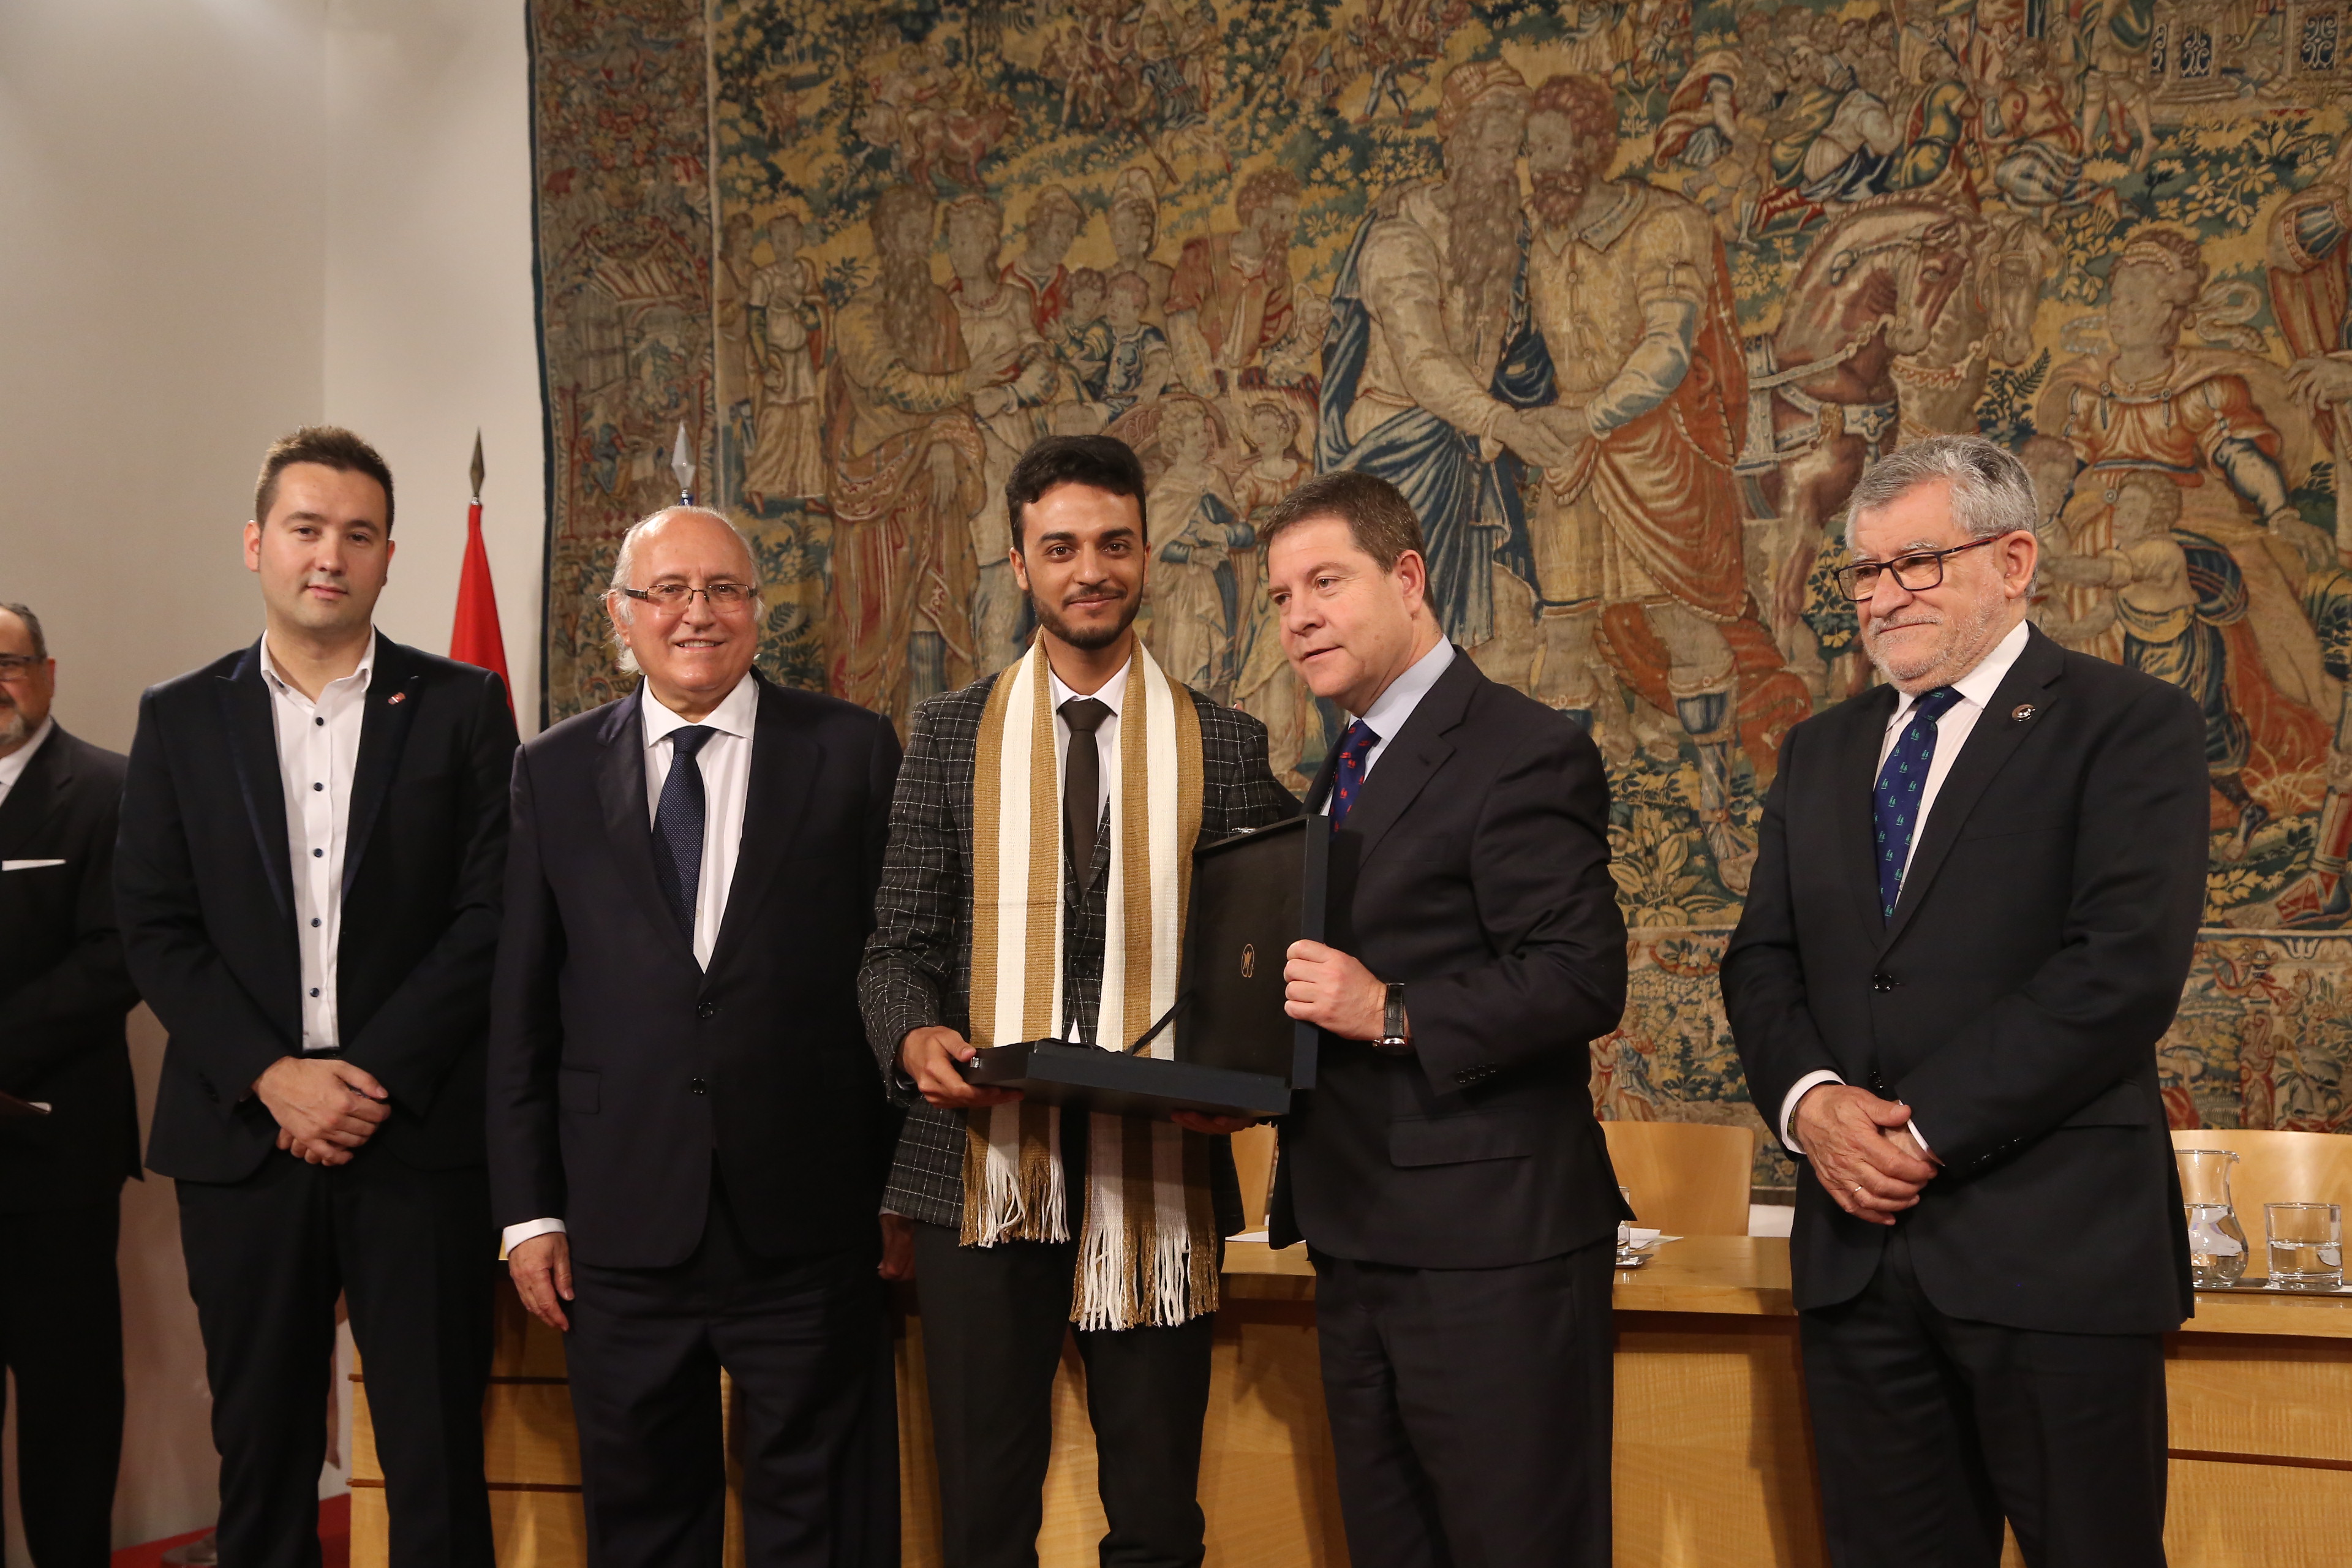 El ganador en la categoría de idioma árabe, Mohammed Haddach recoge su premio de manos de D. Emiliano García-Page, el Consejero de Cultura, Alcalde de Quero y César Egido Serrano.